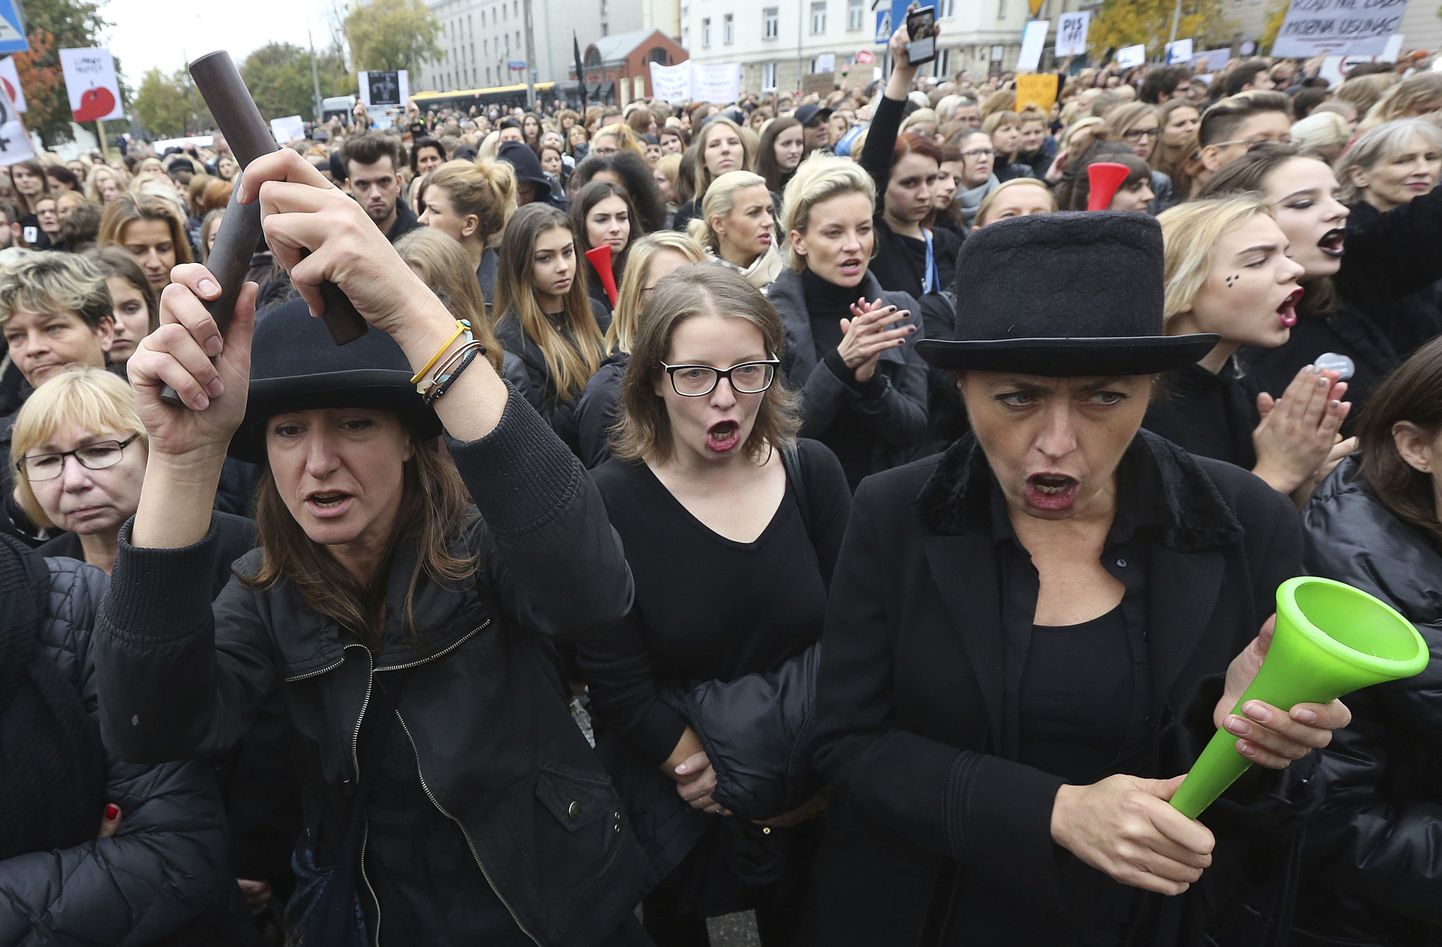 Польки вышли на улицу, чтобы выразить свой протест против поправки к законам, которые введут полный запрет аборты.